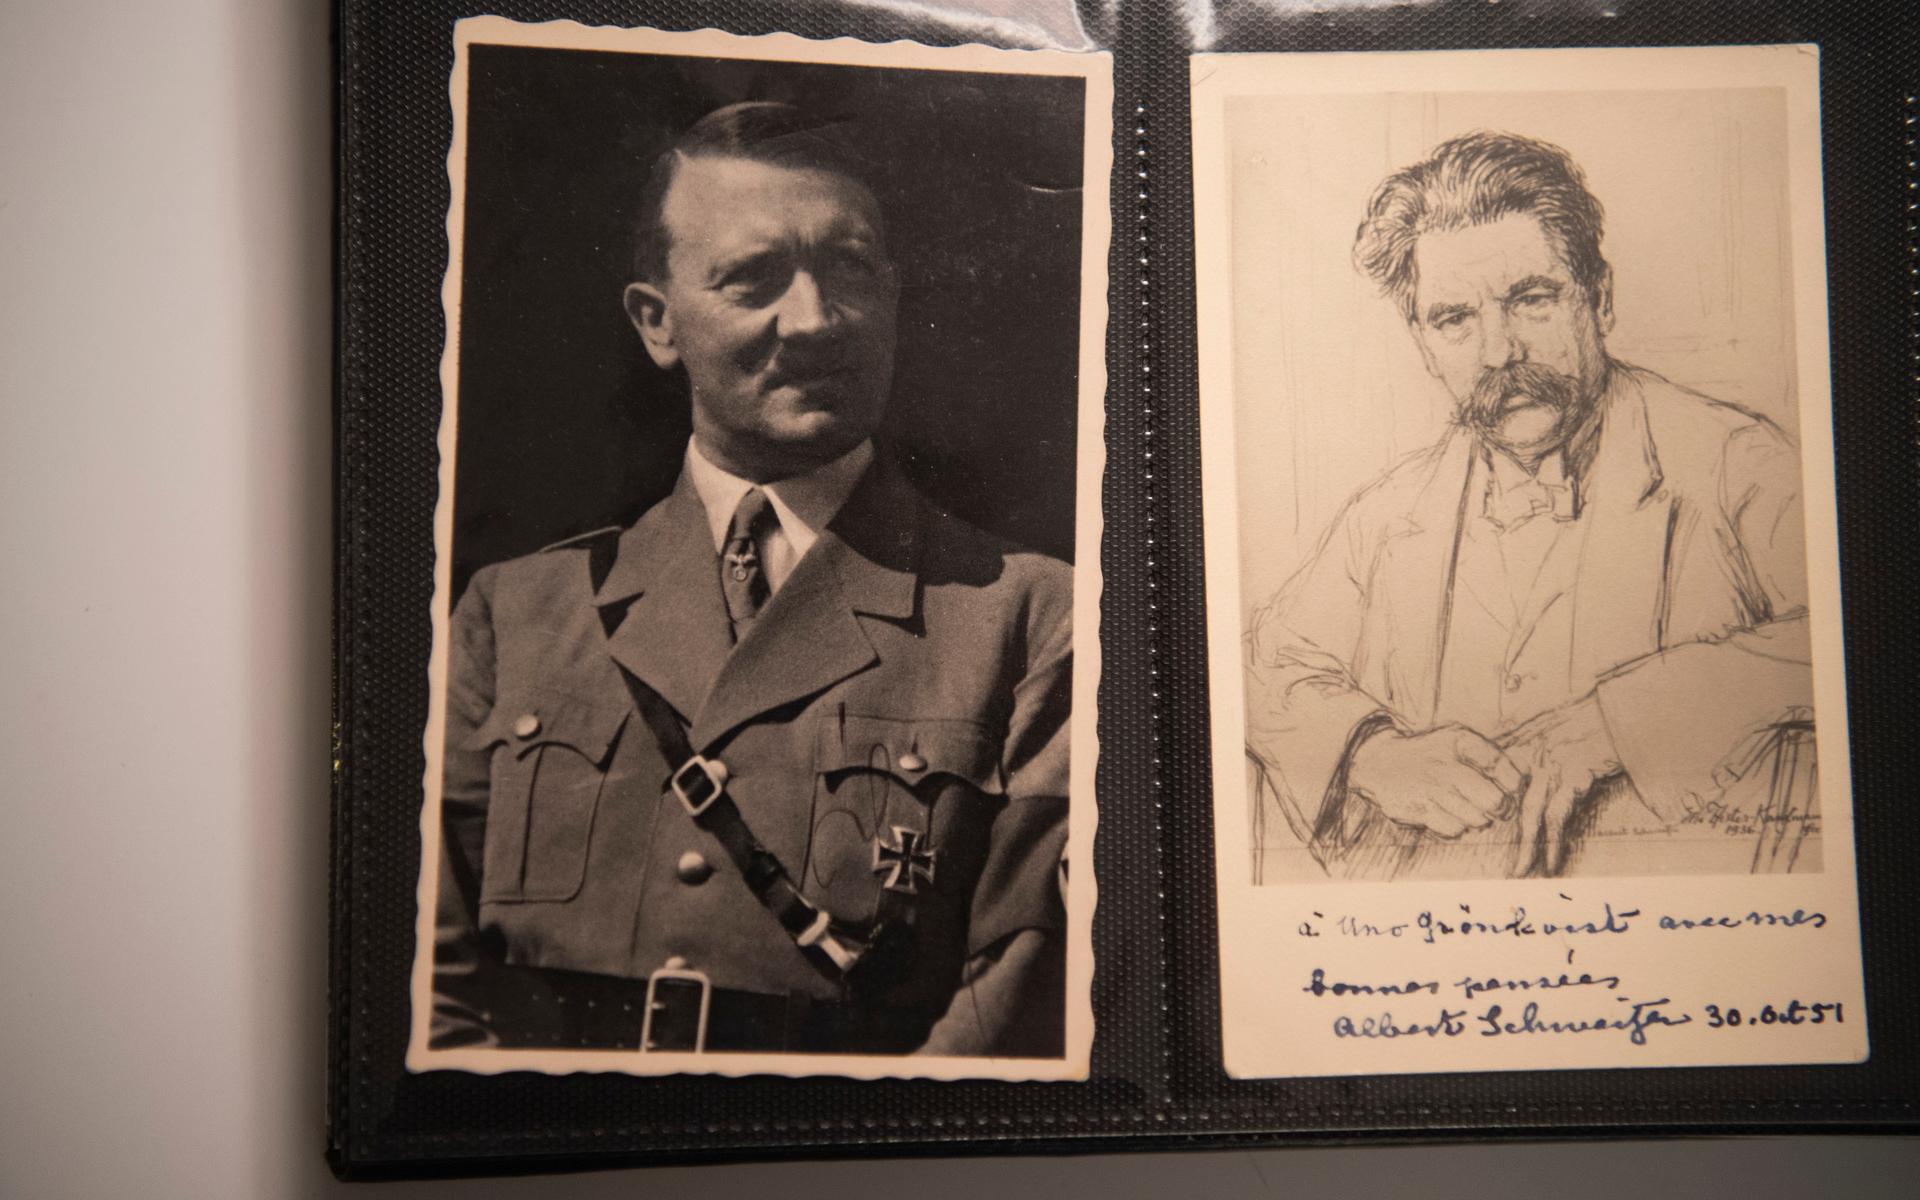 Adolf Hitler delar uppslag med den store humanisten och teologen Albert Schweitzer. ”En konstrast som heter duga”, säger Uno, om även köpt många av autograferna i sin samling.